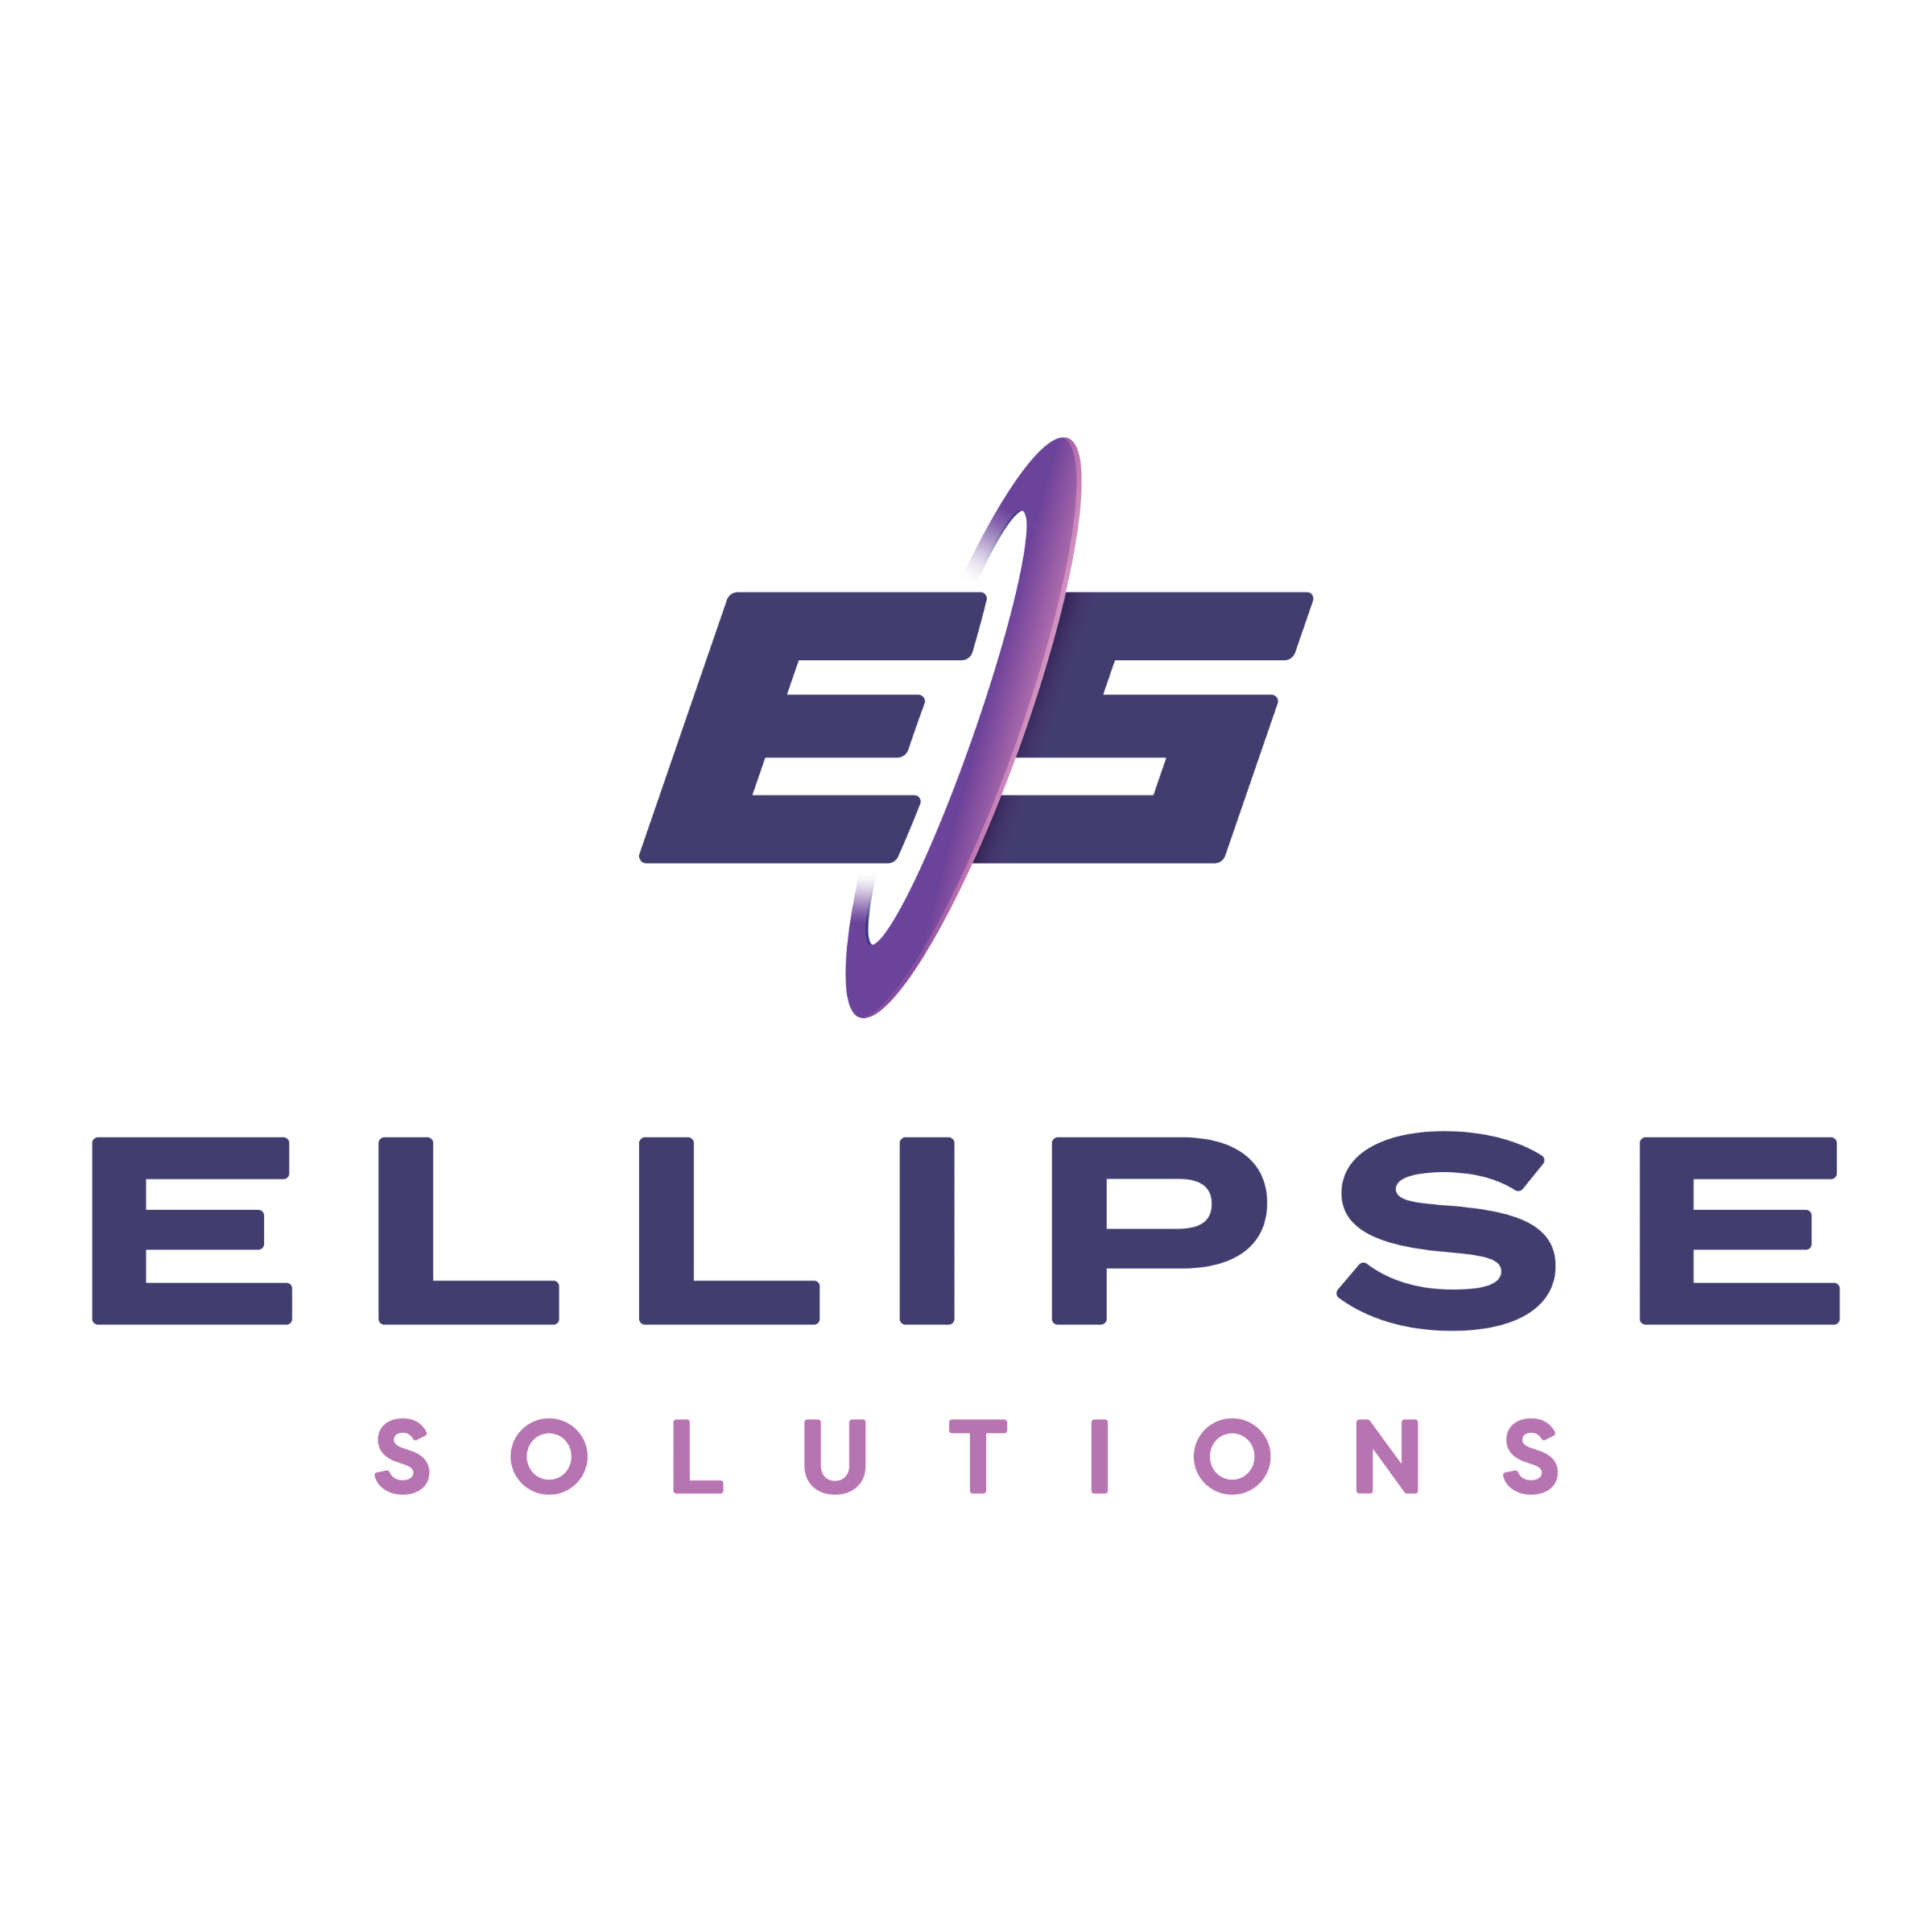 EllipseSolutions_fullcolor-vertical-standard